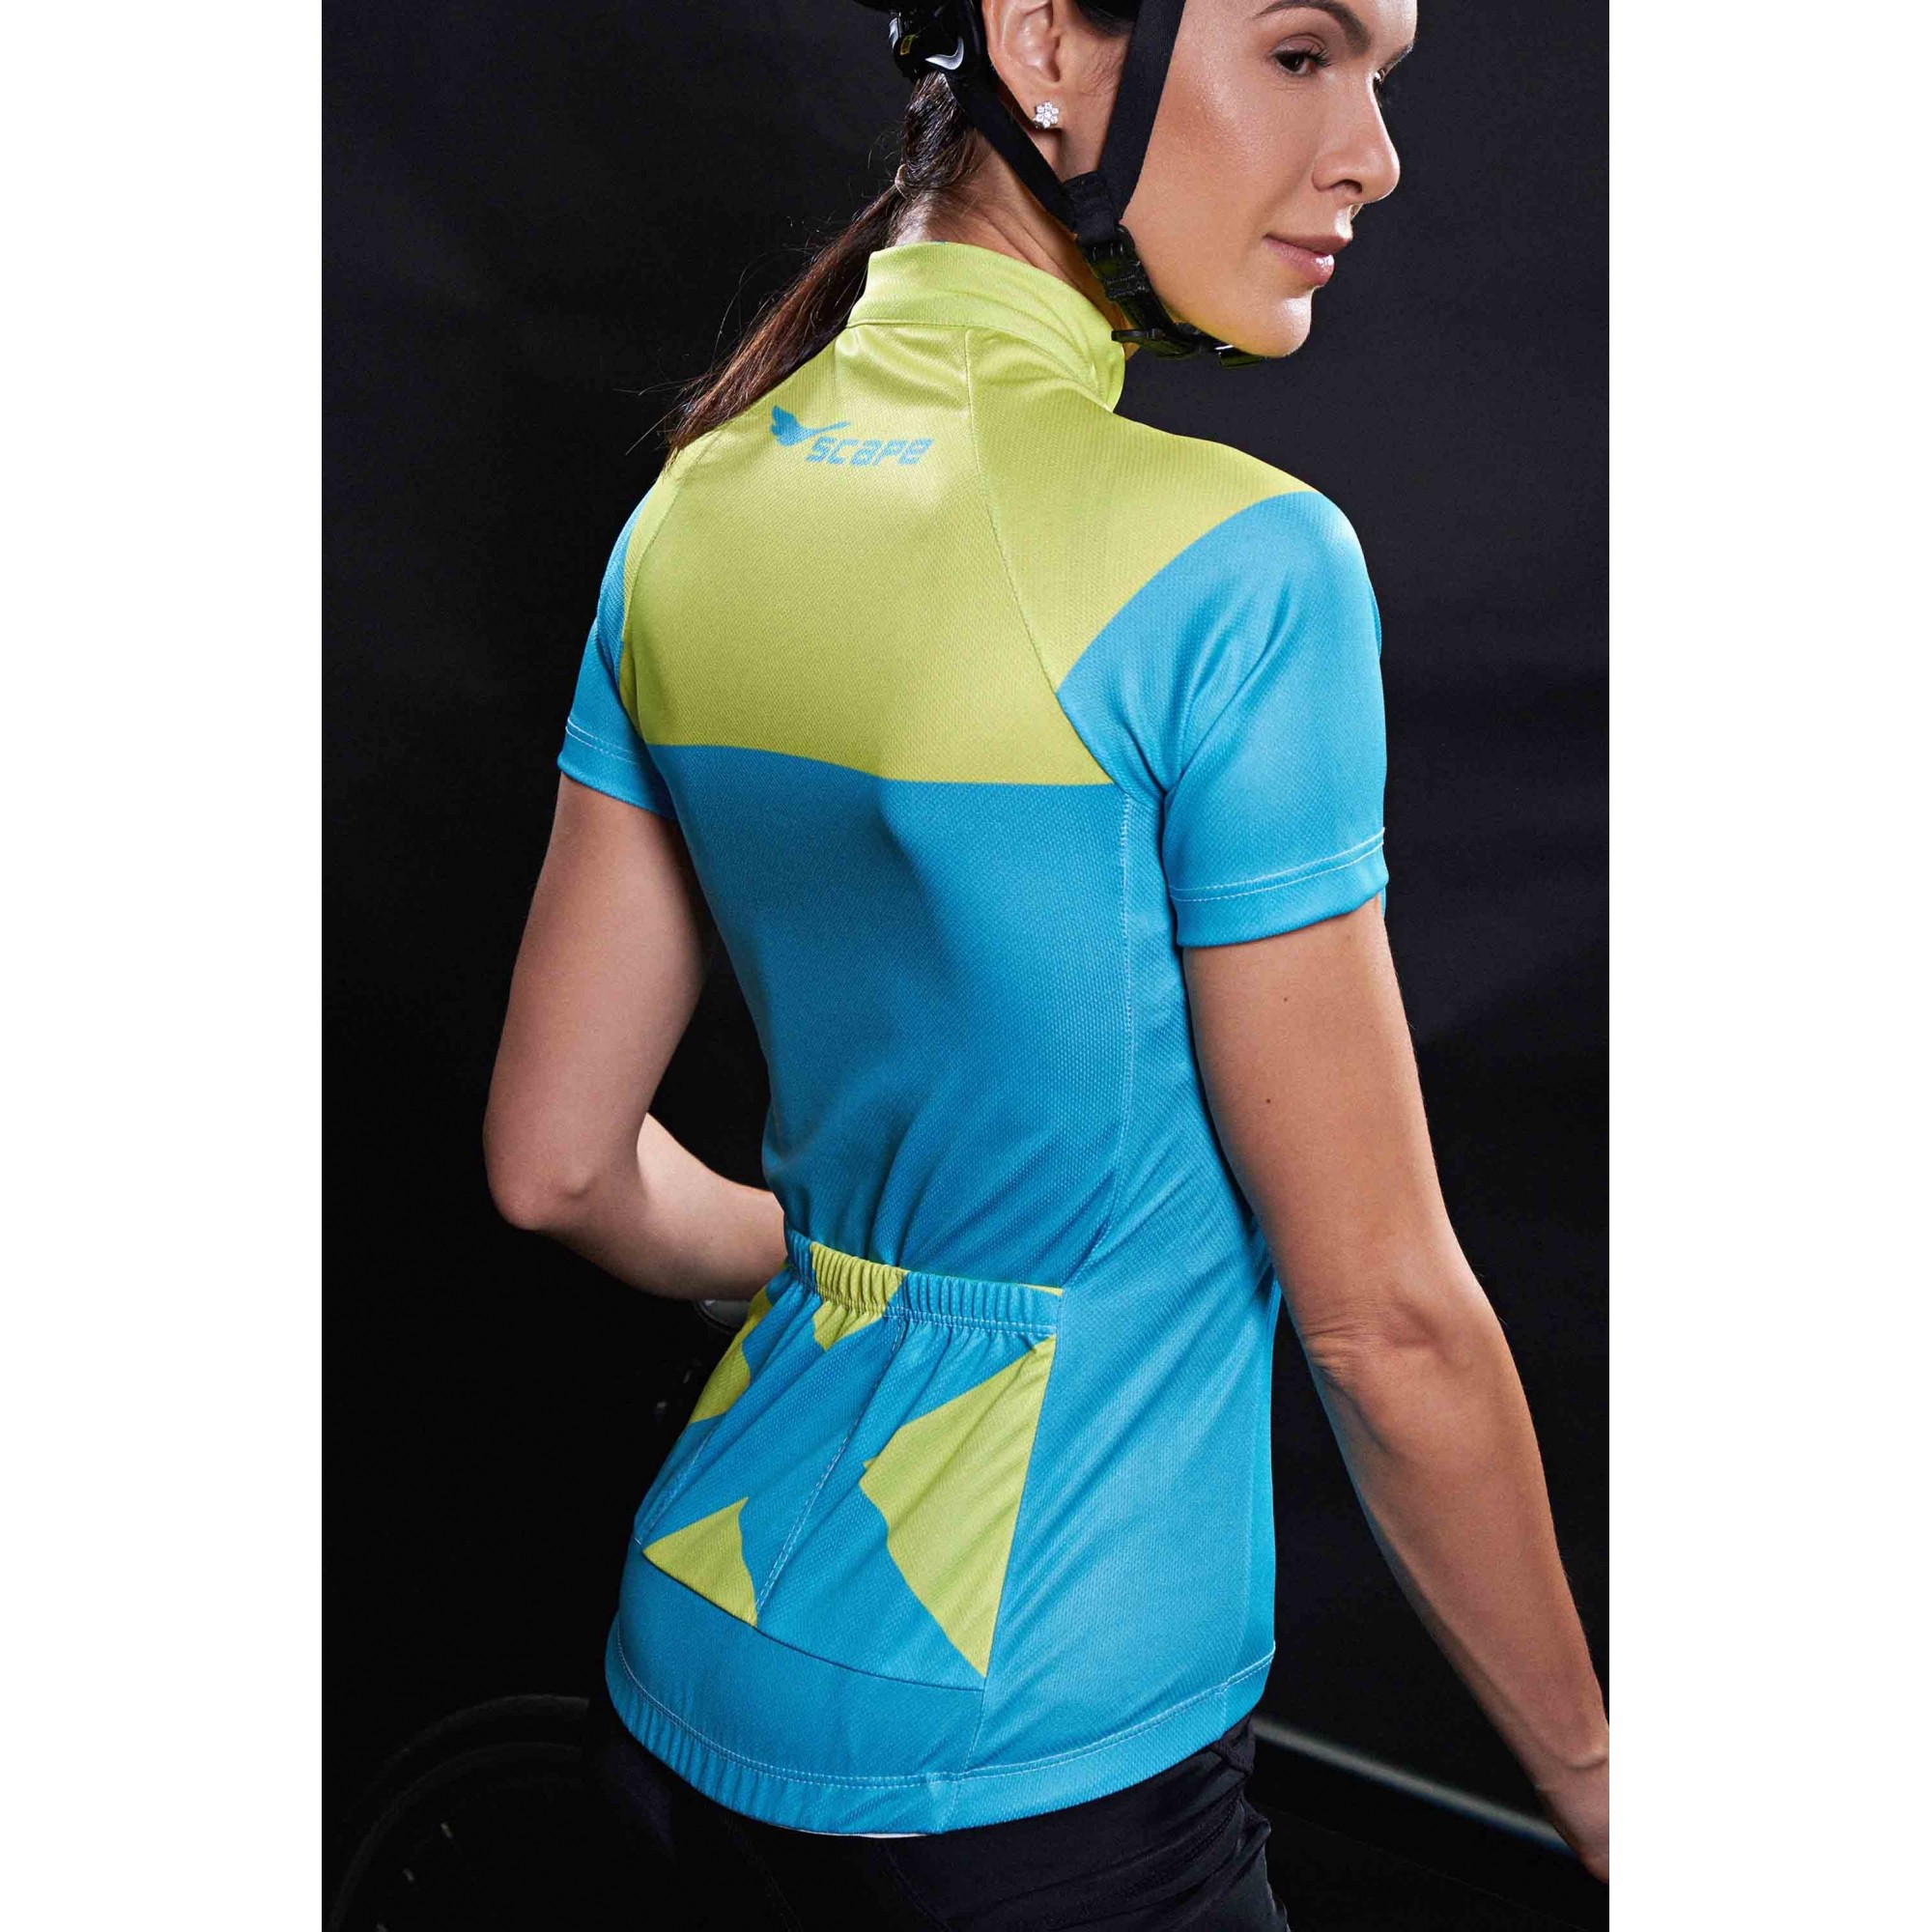 Camisa Feminina Lemon c/ Proteção UV - Scape